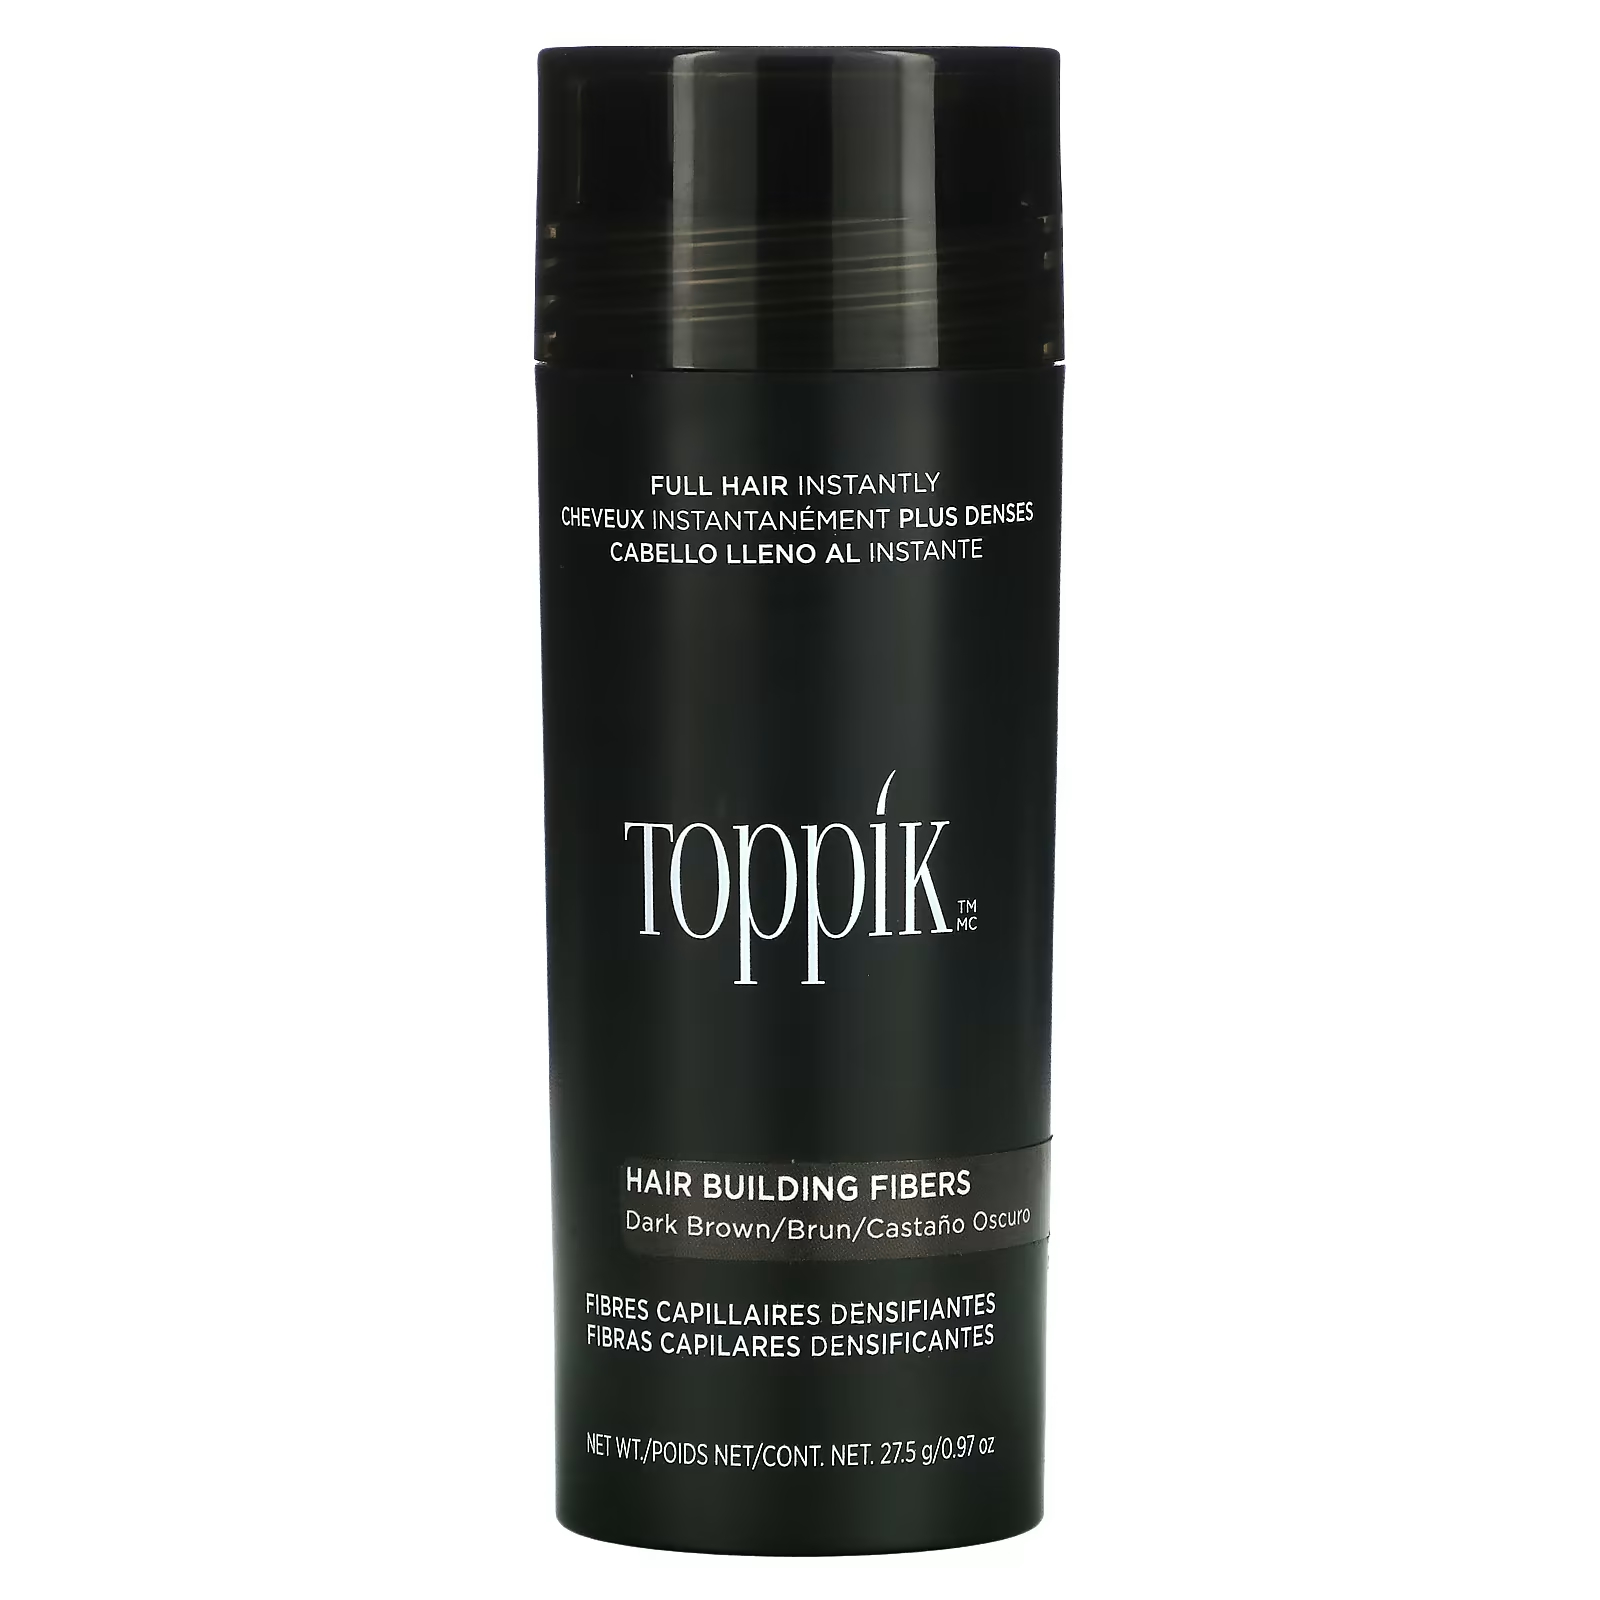 Загуститель для волос Toppik Hair Building Fibers темно-коричневый toppik загуститель волос hair building fibers black